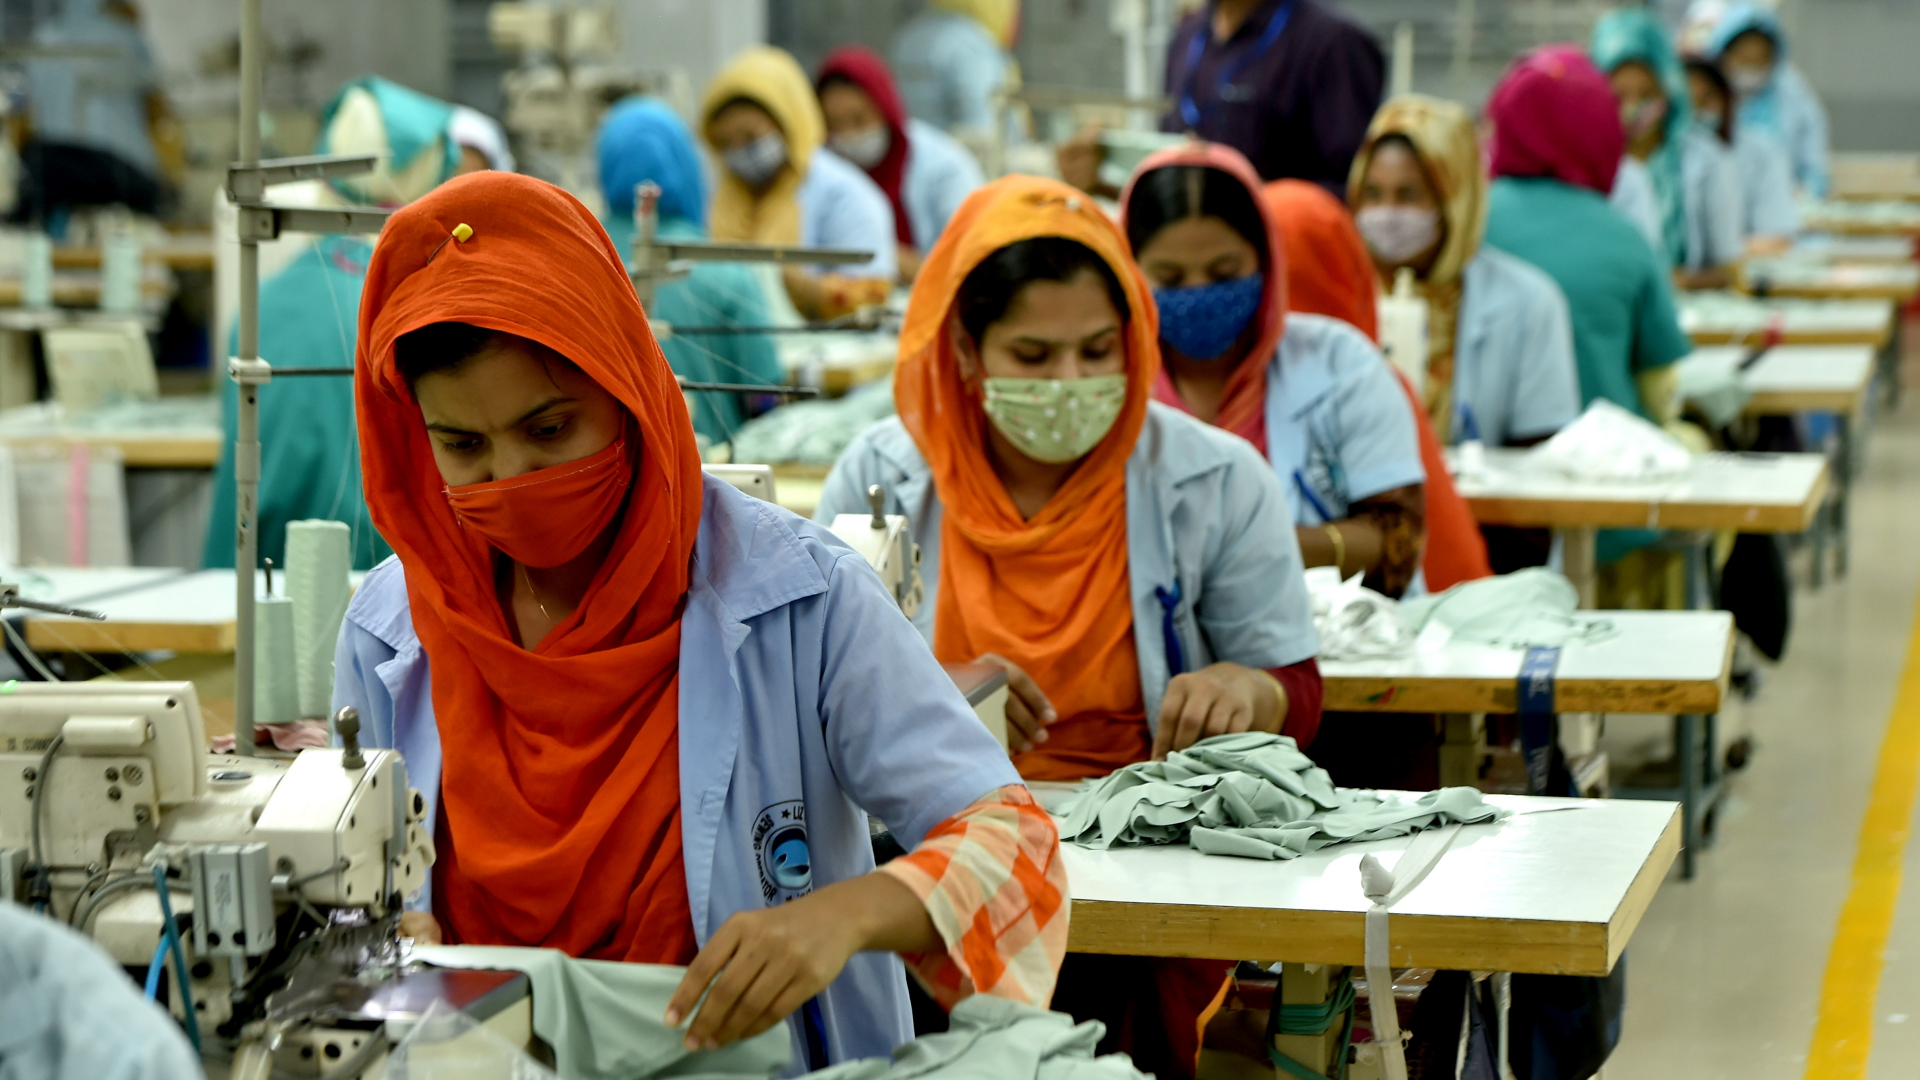 Näherinnen in einer Fabrik in Gazipur, Bangladesch | dpa